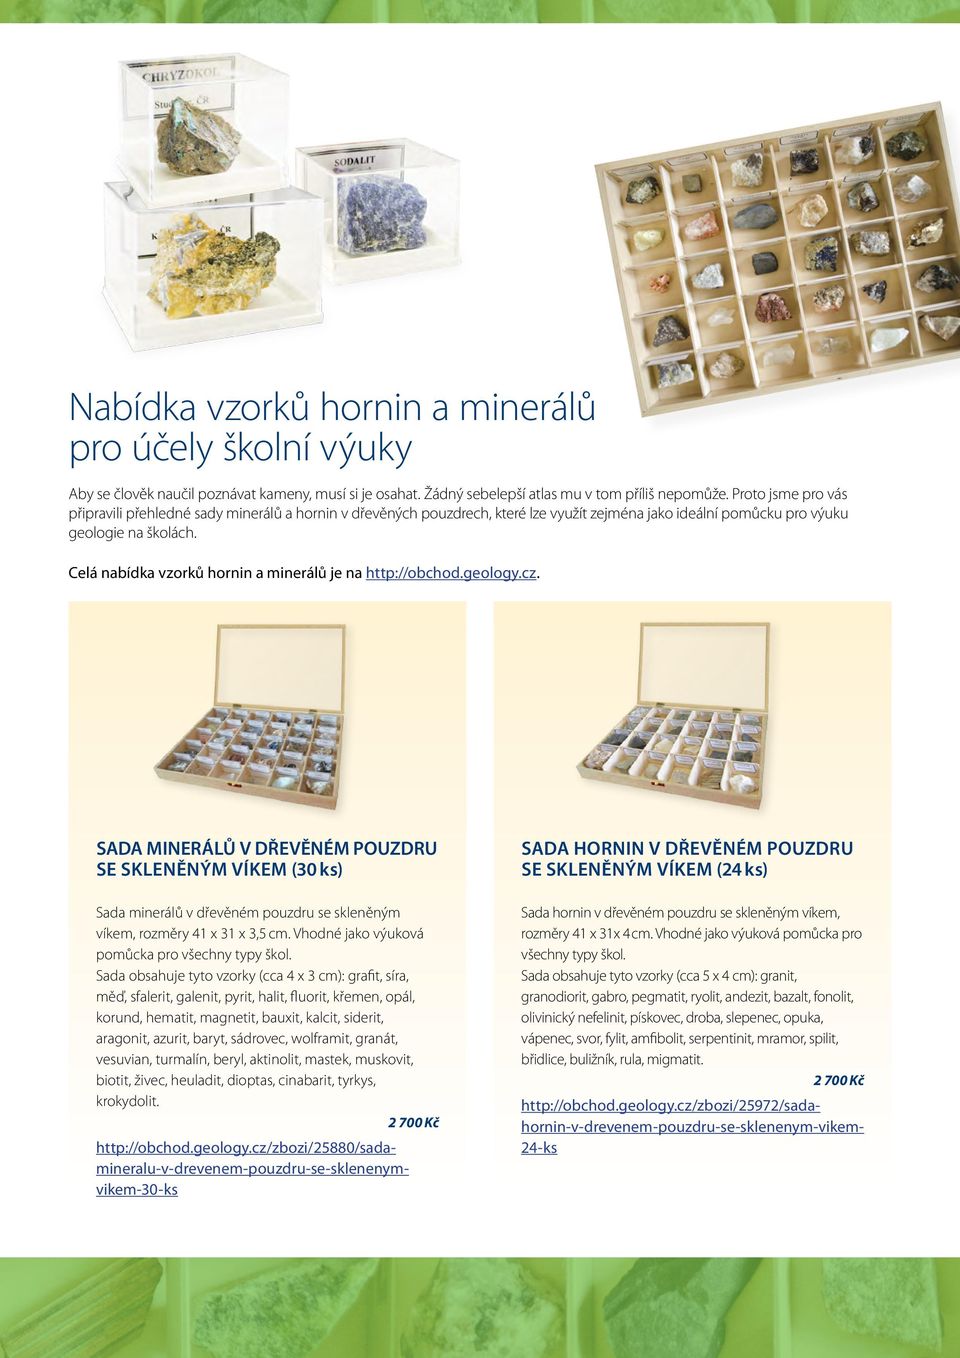 Celá nabídka vzorků hornin a minerálů je na http://obchod.geology.cz.